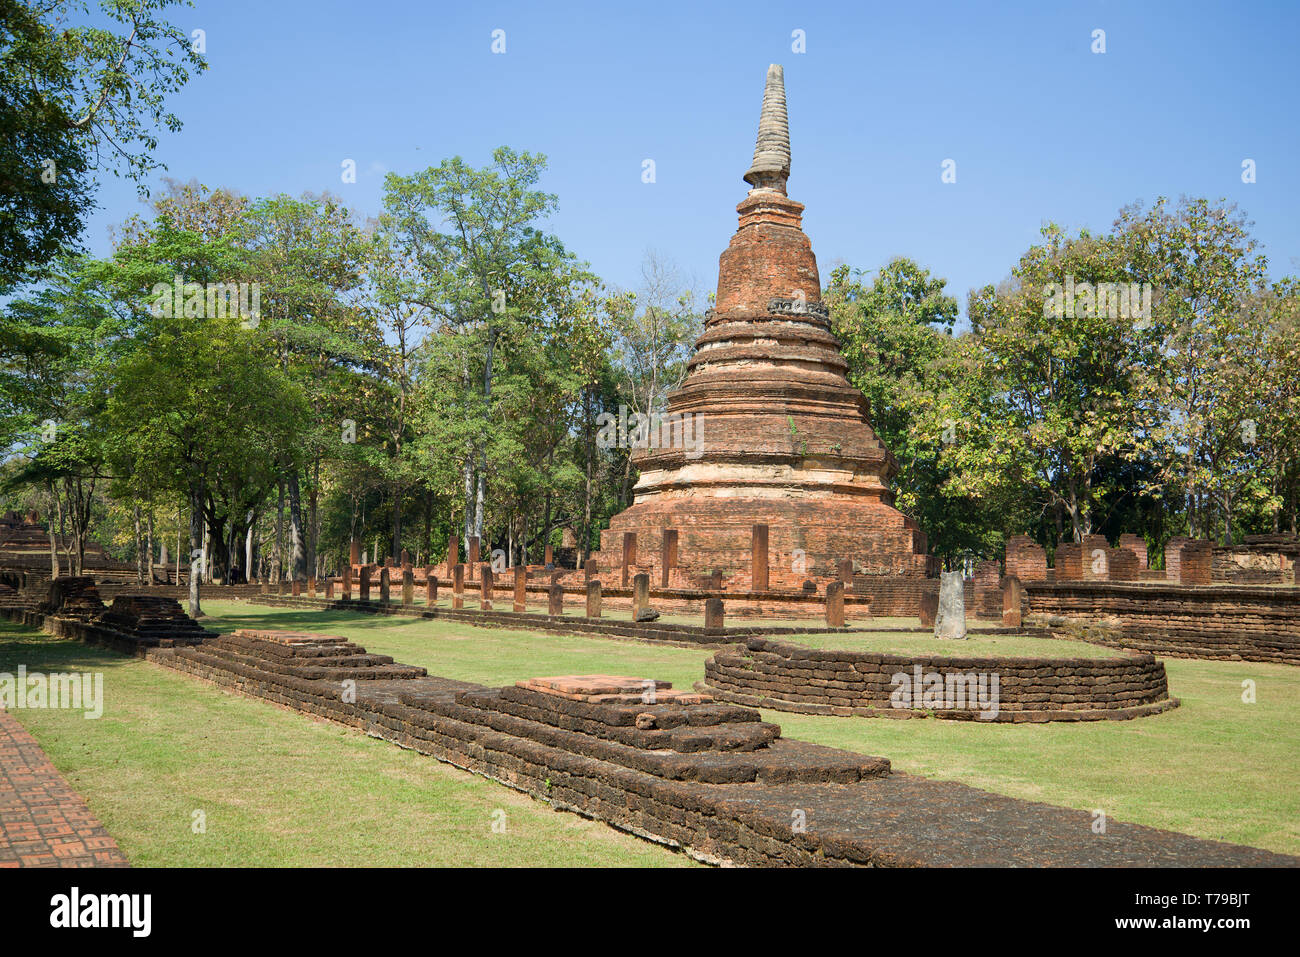 Alten stupa auf den Ruinen des buddhistischen Tempel von Wat Phra That. Kamphaeng Phet, Thailand Stockfoto